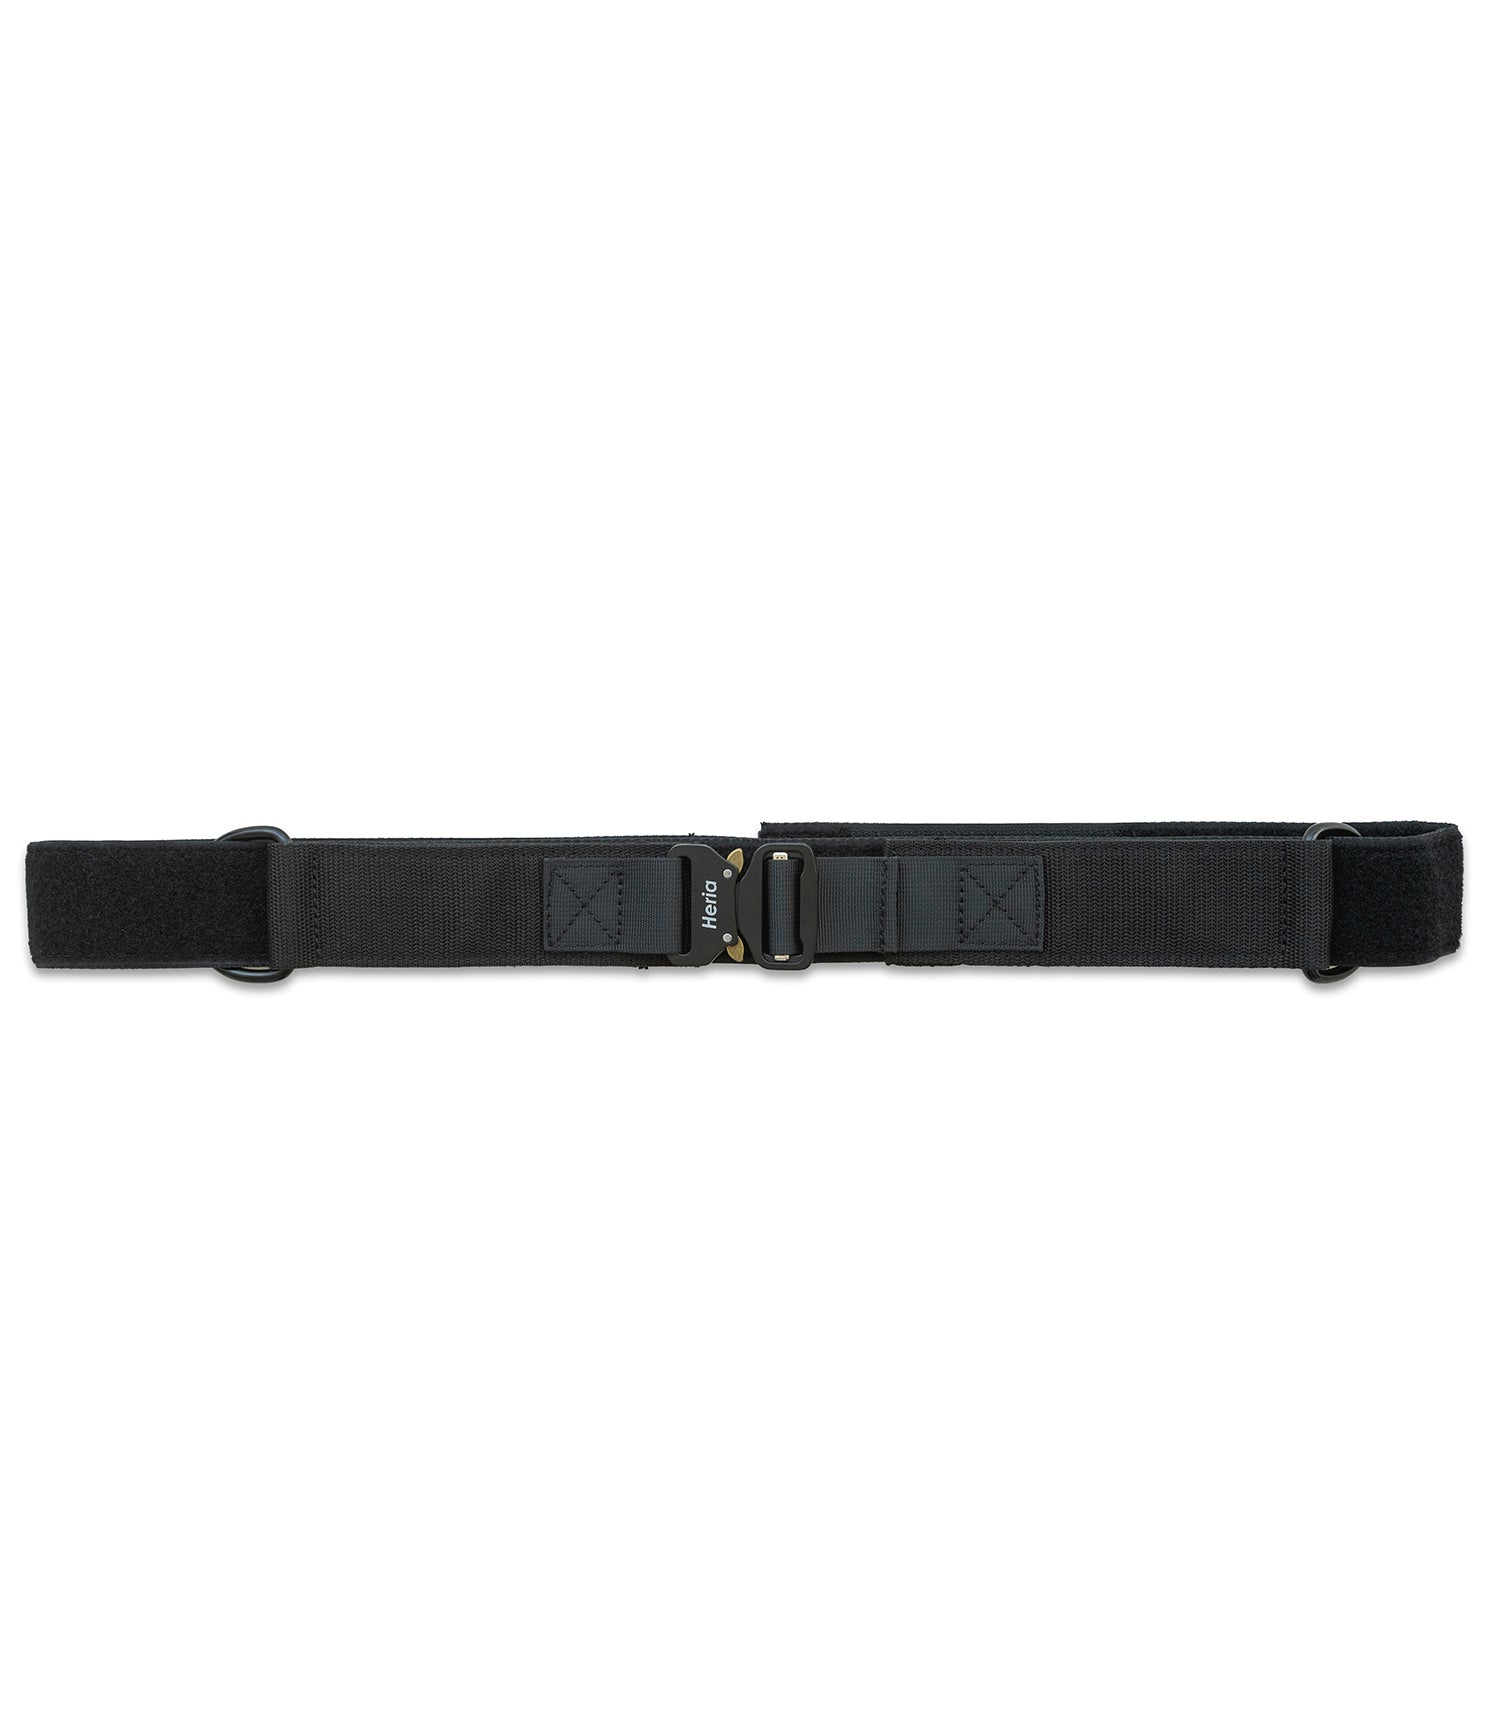 Heria Weight Vest Strap - Black (6934167191594)